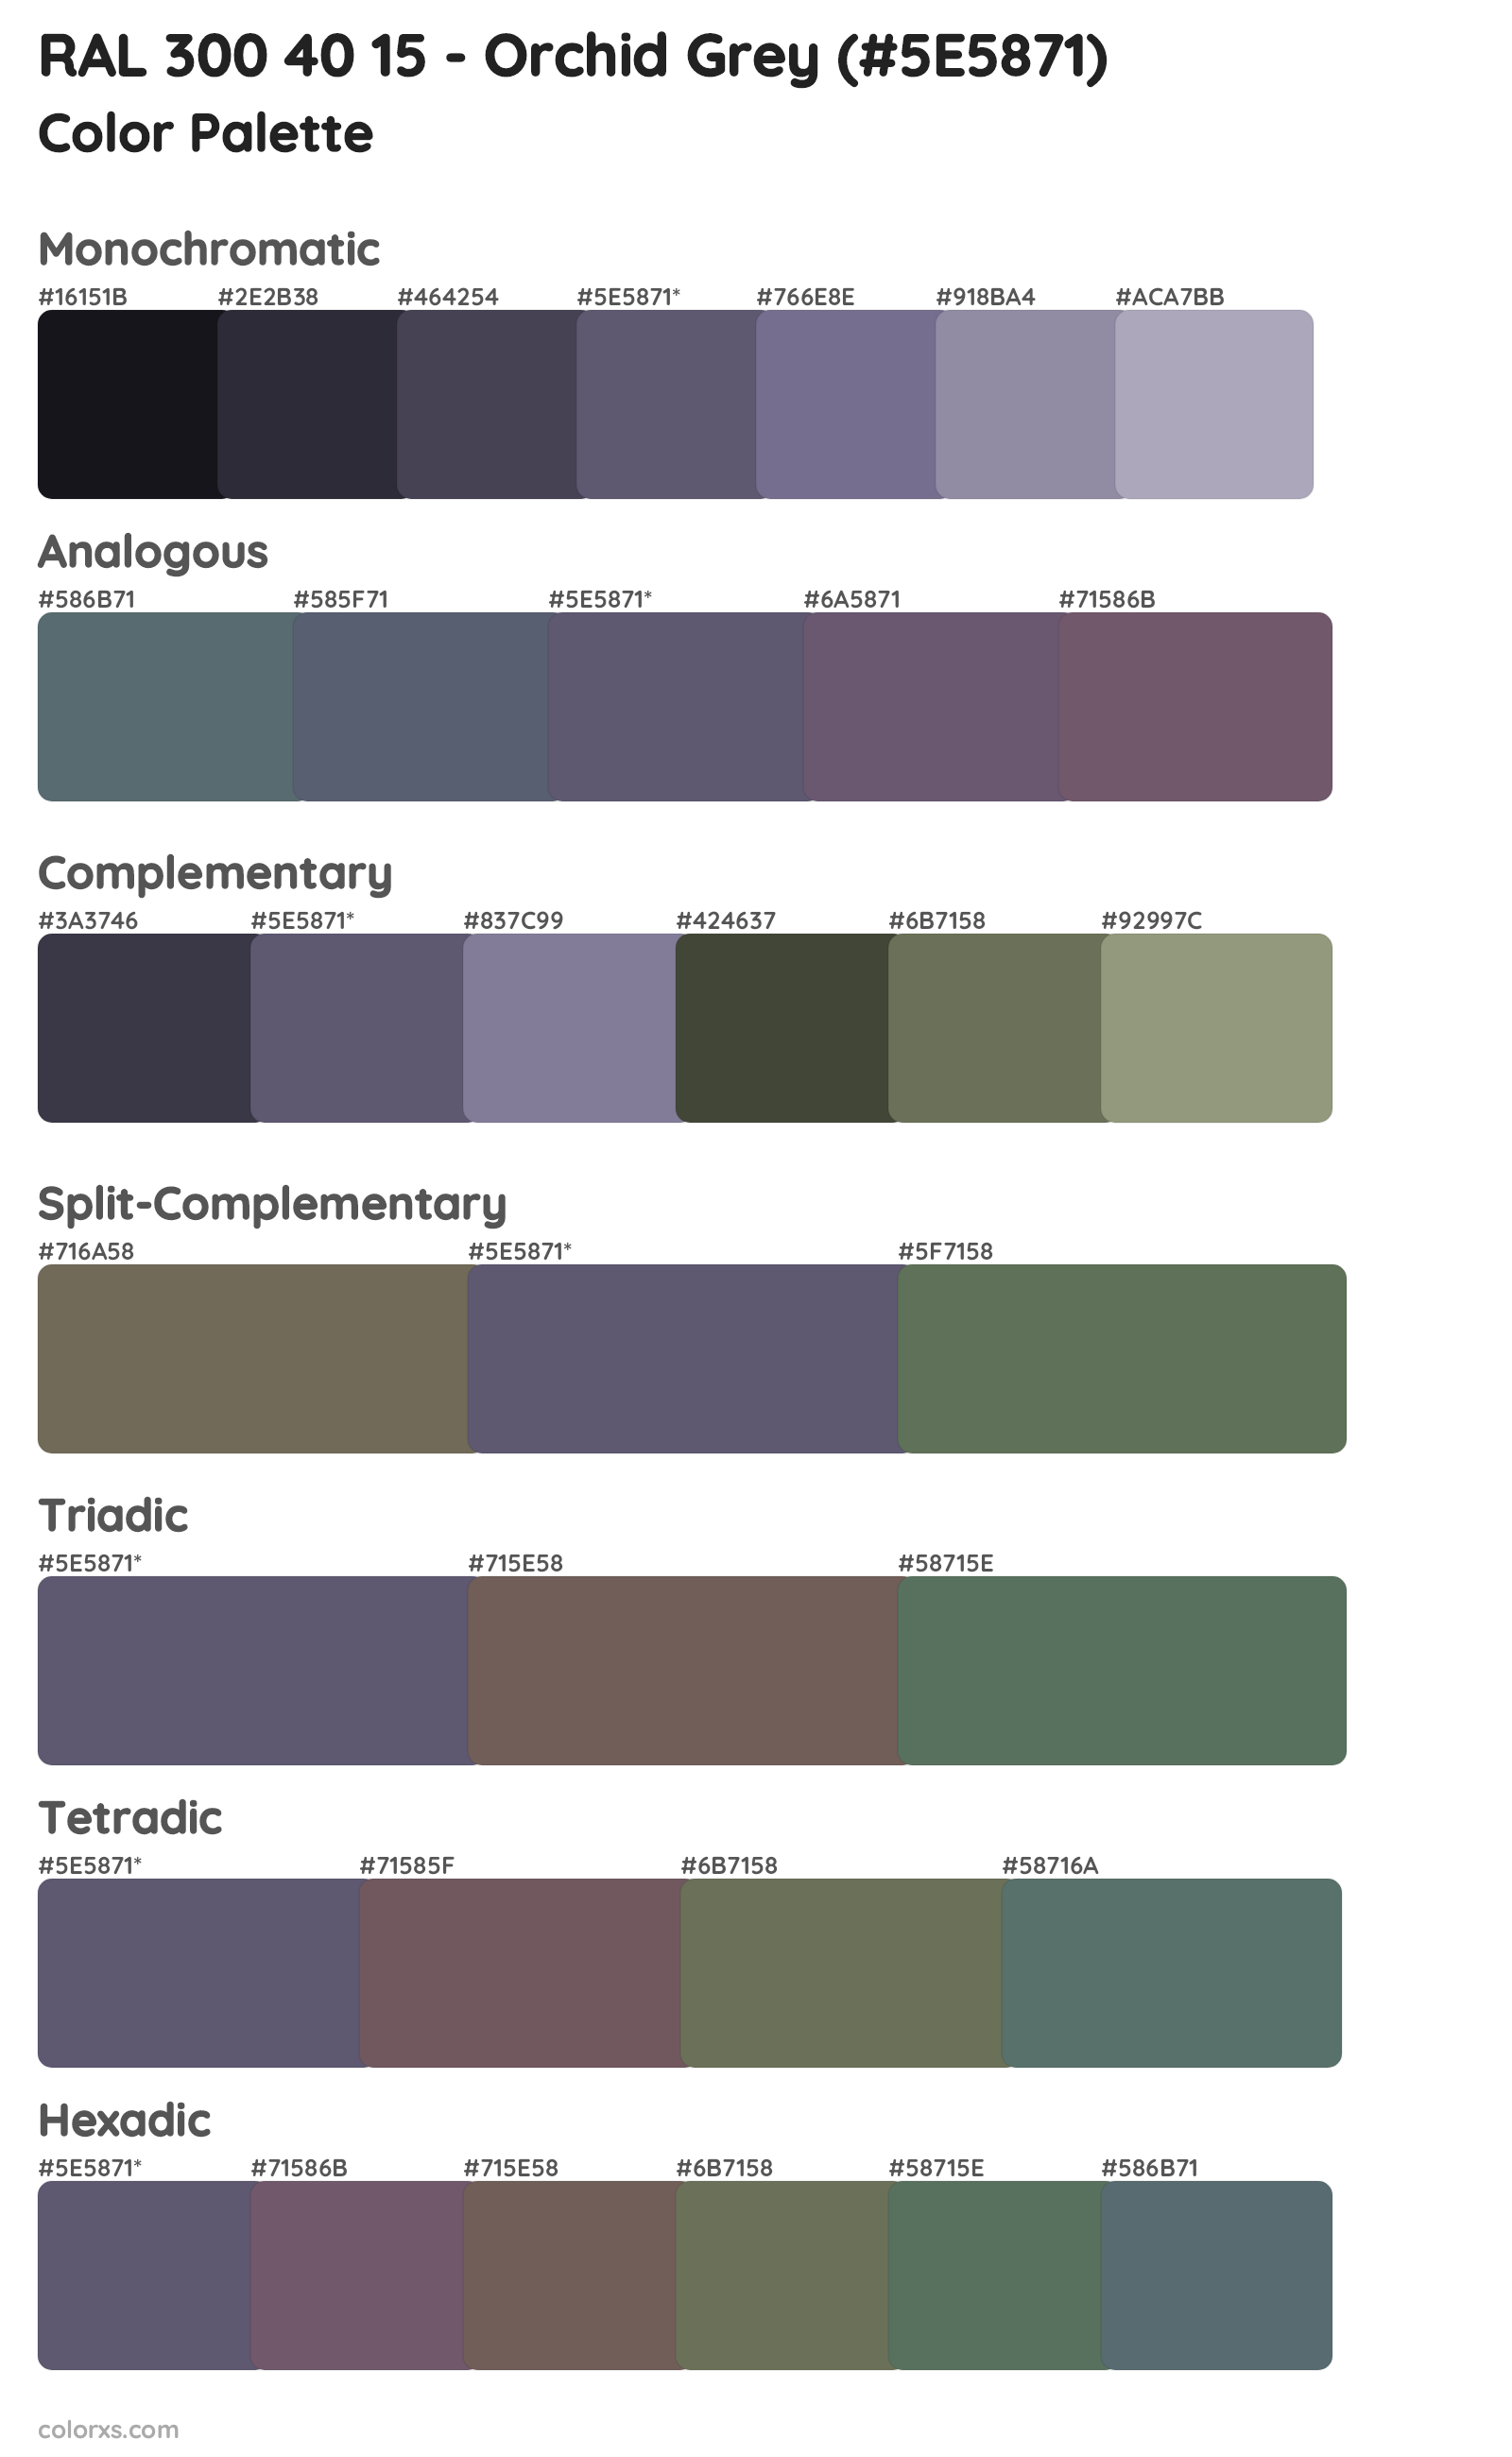 RAL 300 40 15 - Orchid Grey Color Scheme Palettes